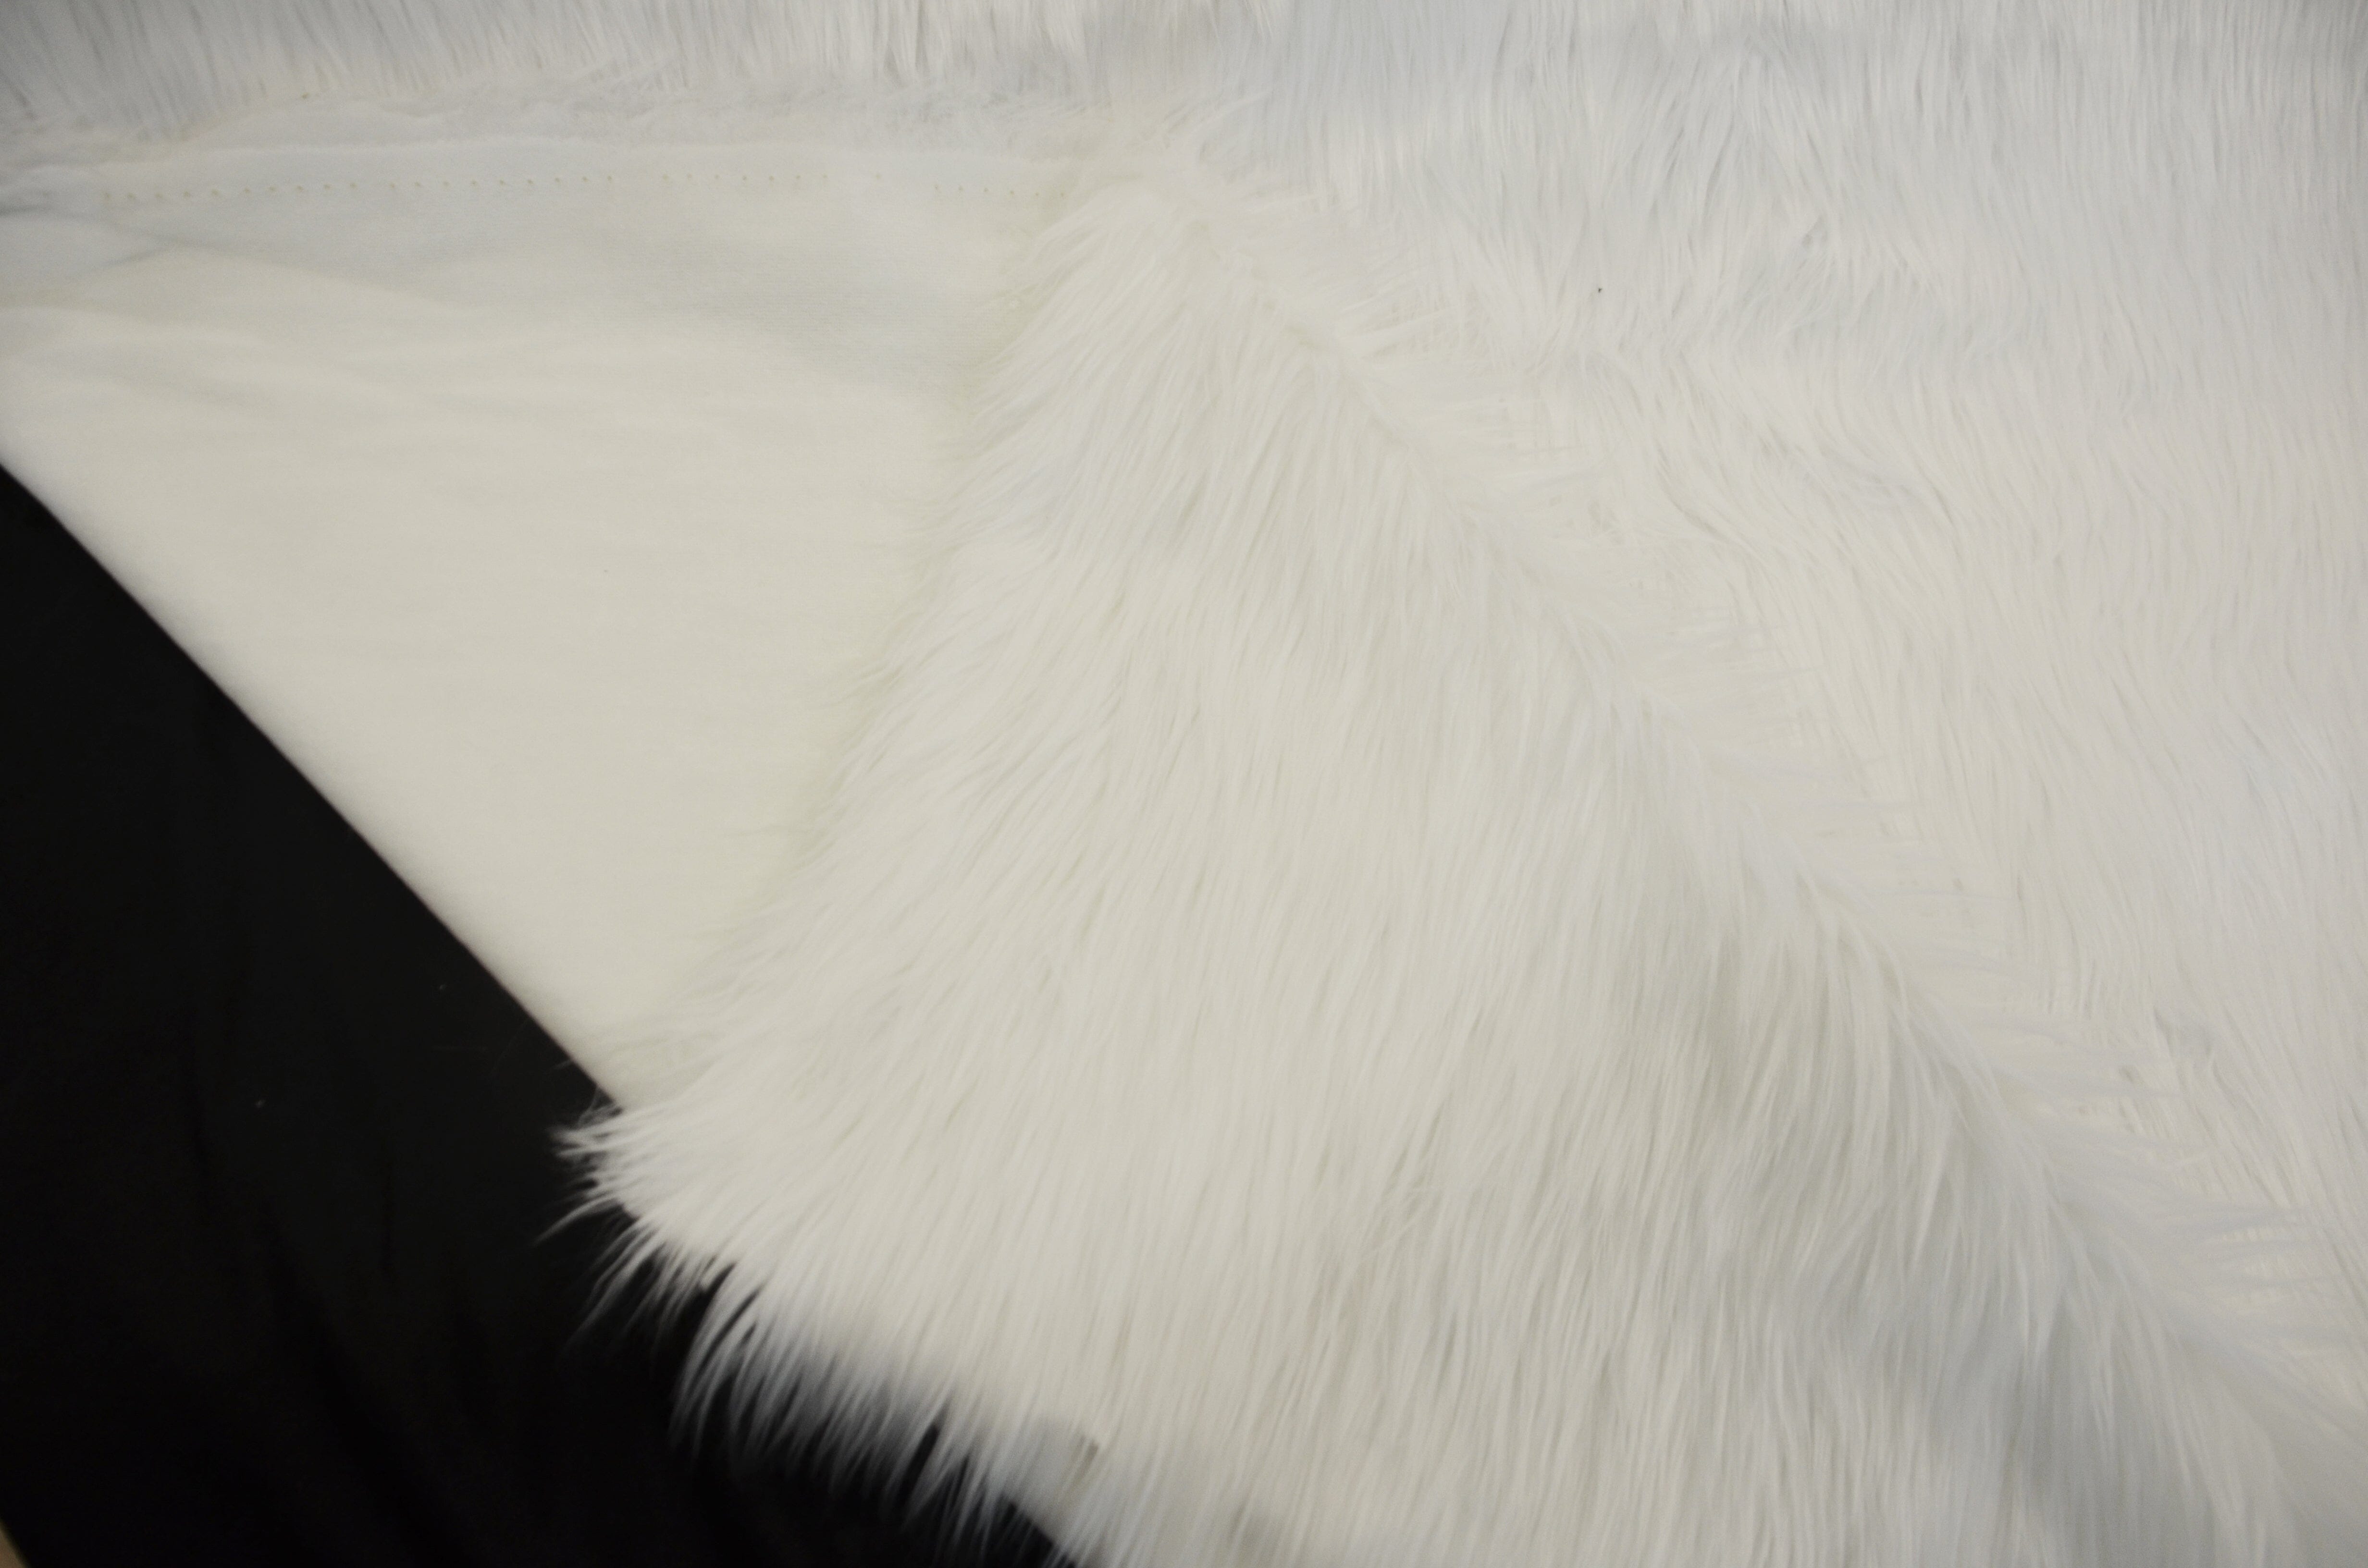 White Faux Fur 2" Pile | White Fur Fabric | Fursuit Fur | Fake Fur Fabric | Costume & Cosplay Fur Fabric | Long Pile Faux Fur | White Shag | Fabric mytextilefabric 